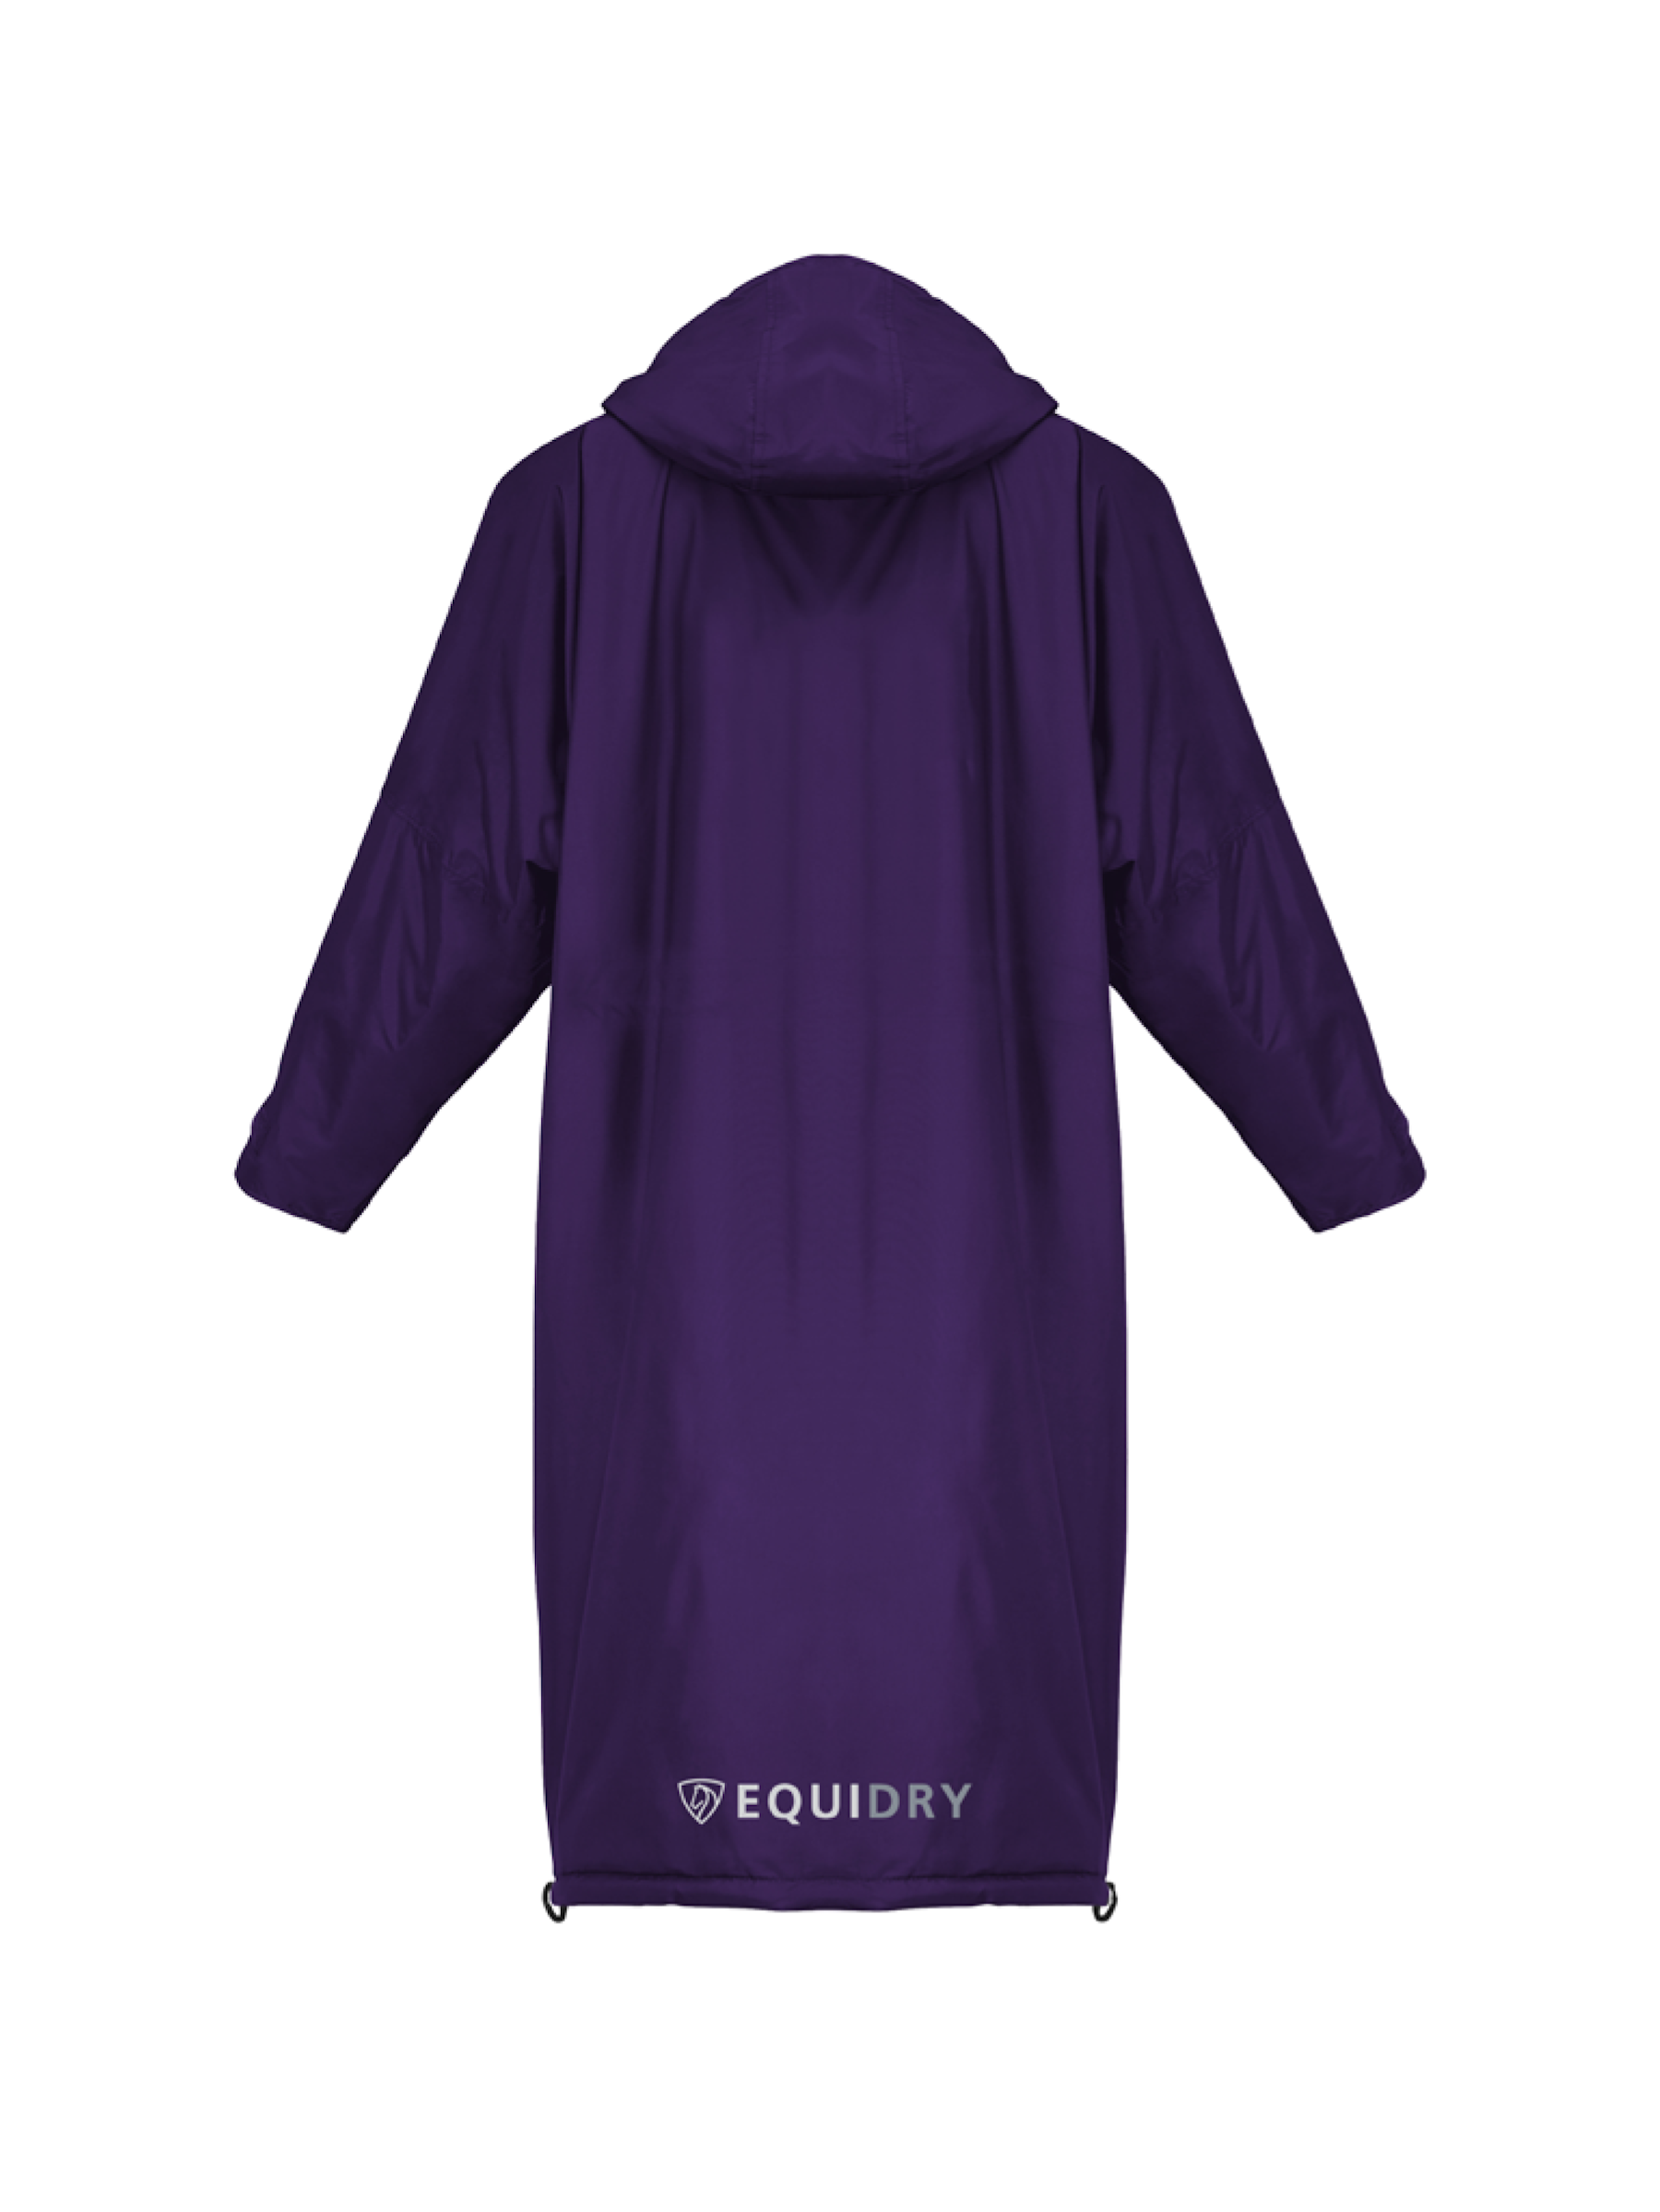 Equimac_purple_back_b5c4409d-446e-4a8b-97db-4f56a1e76a89.png